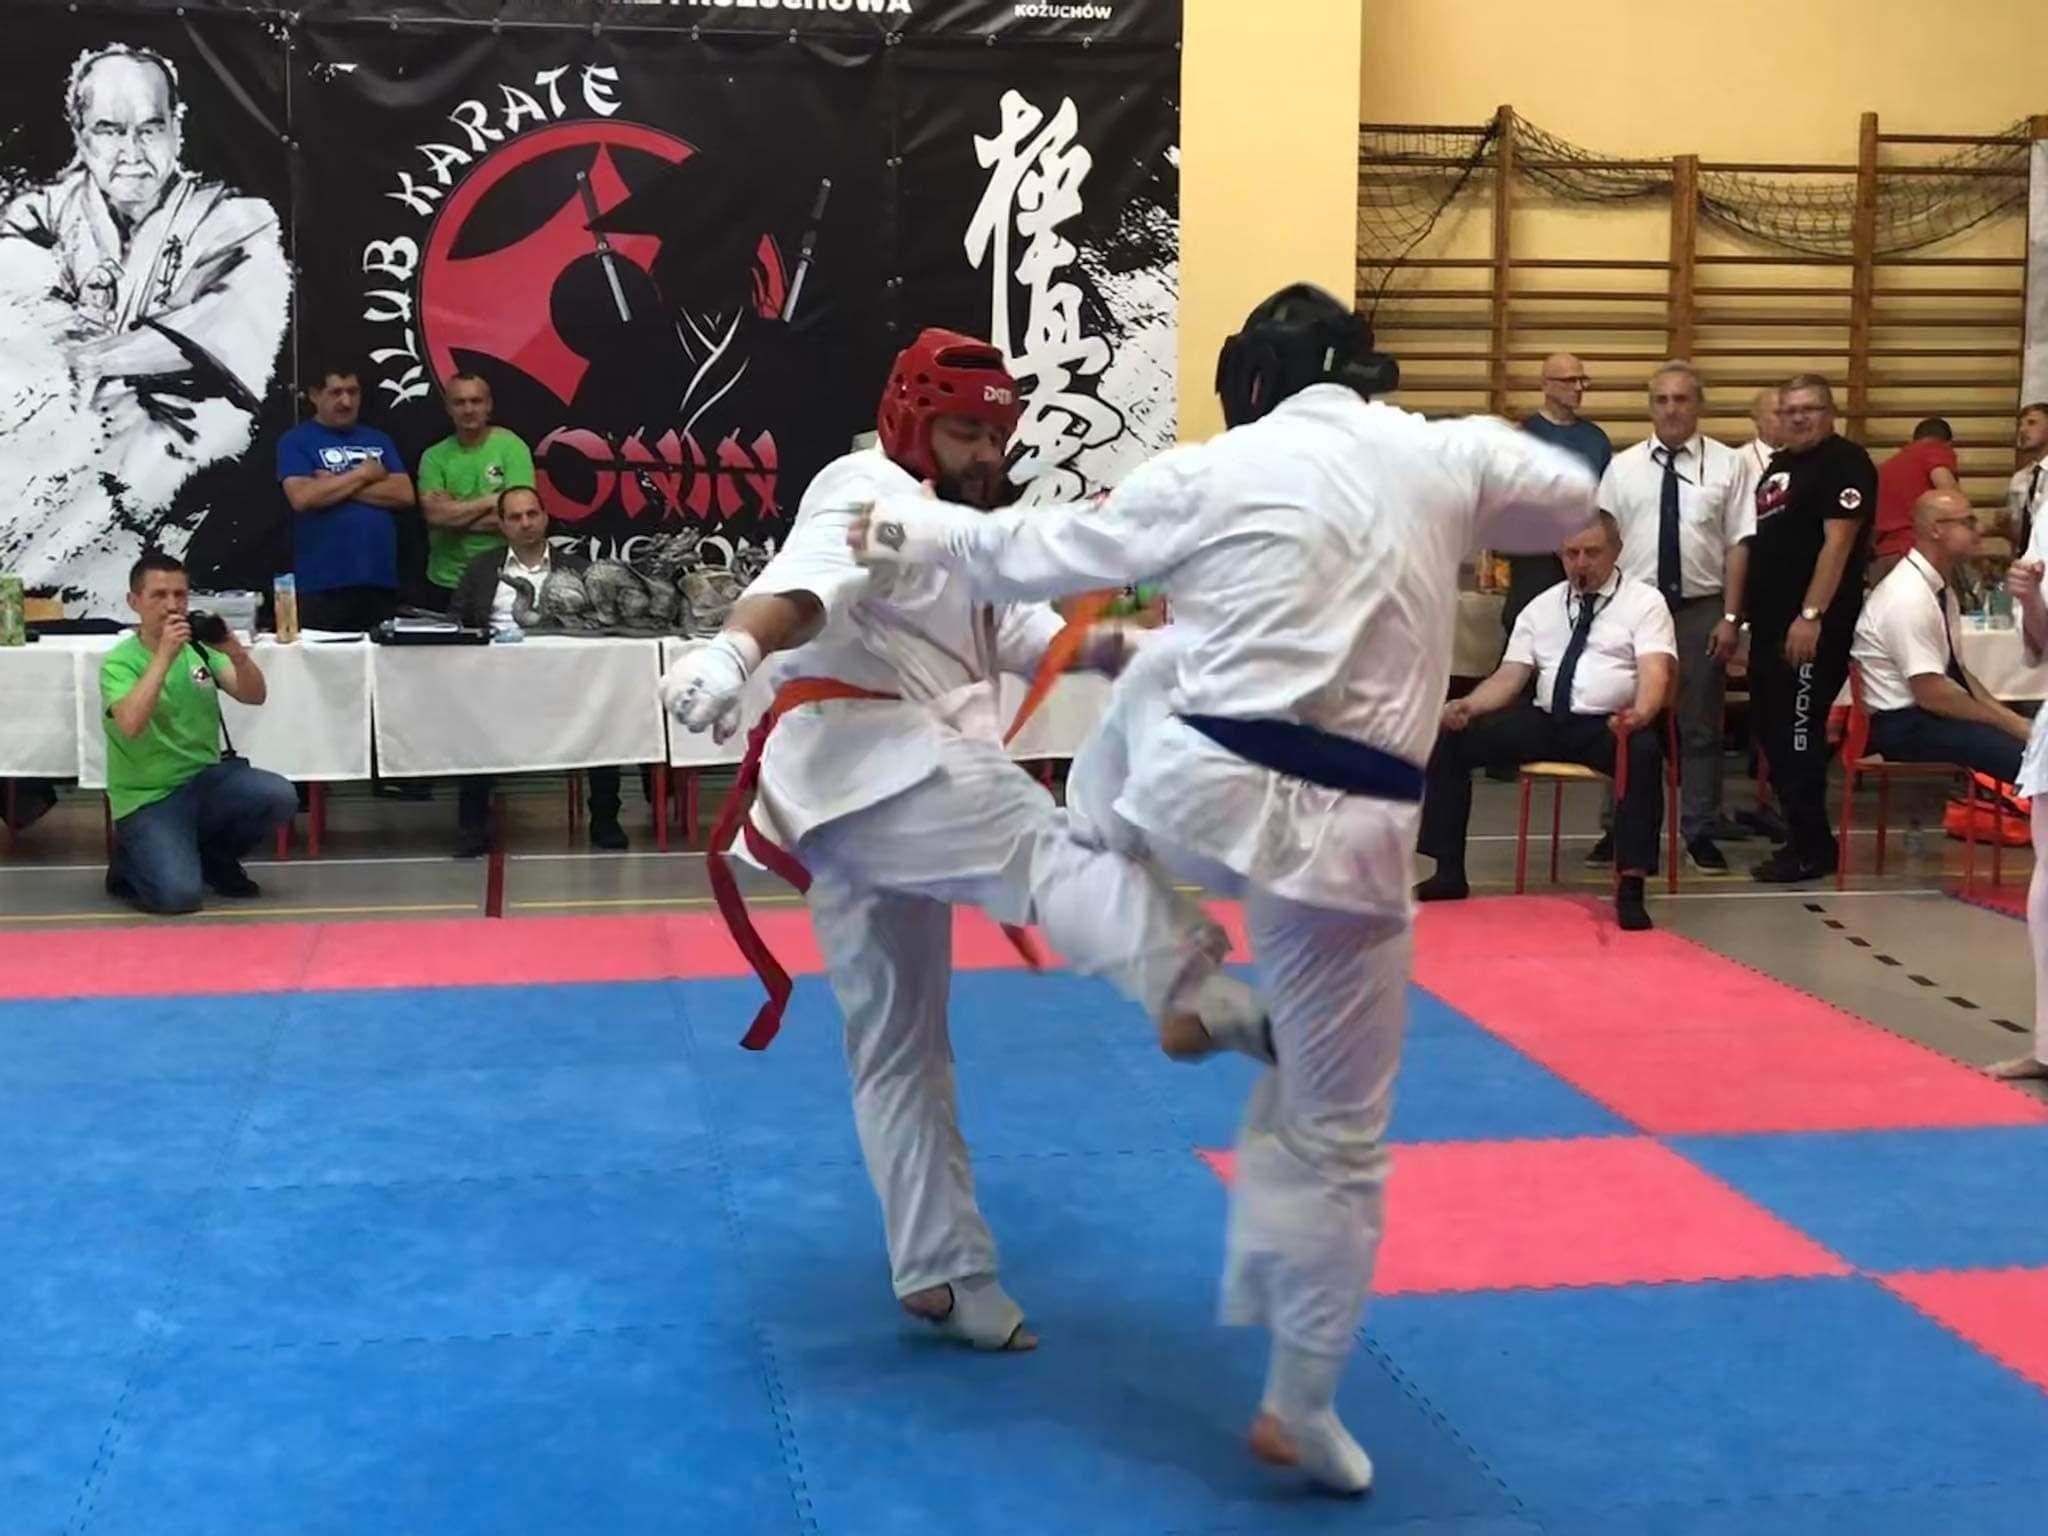 Zdj. nr. 2. Otwarty Turniej Karate Kyokushin - 28 maja 2022 r., Kożuchów